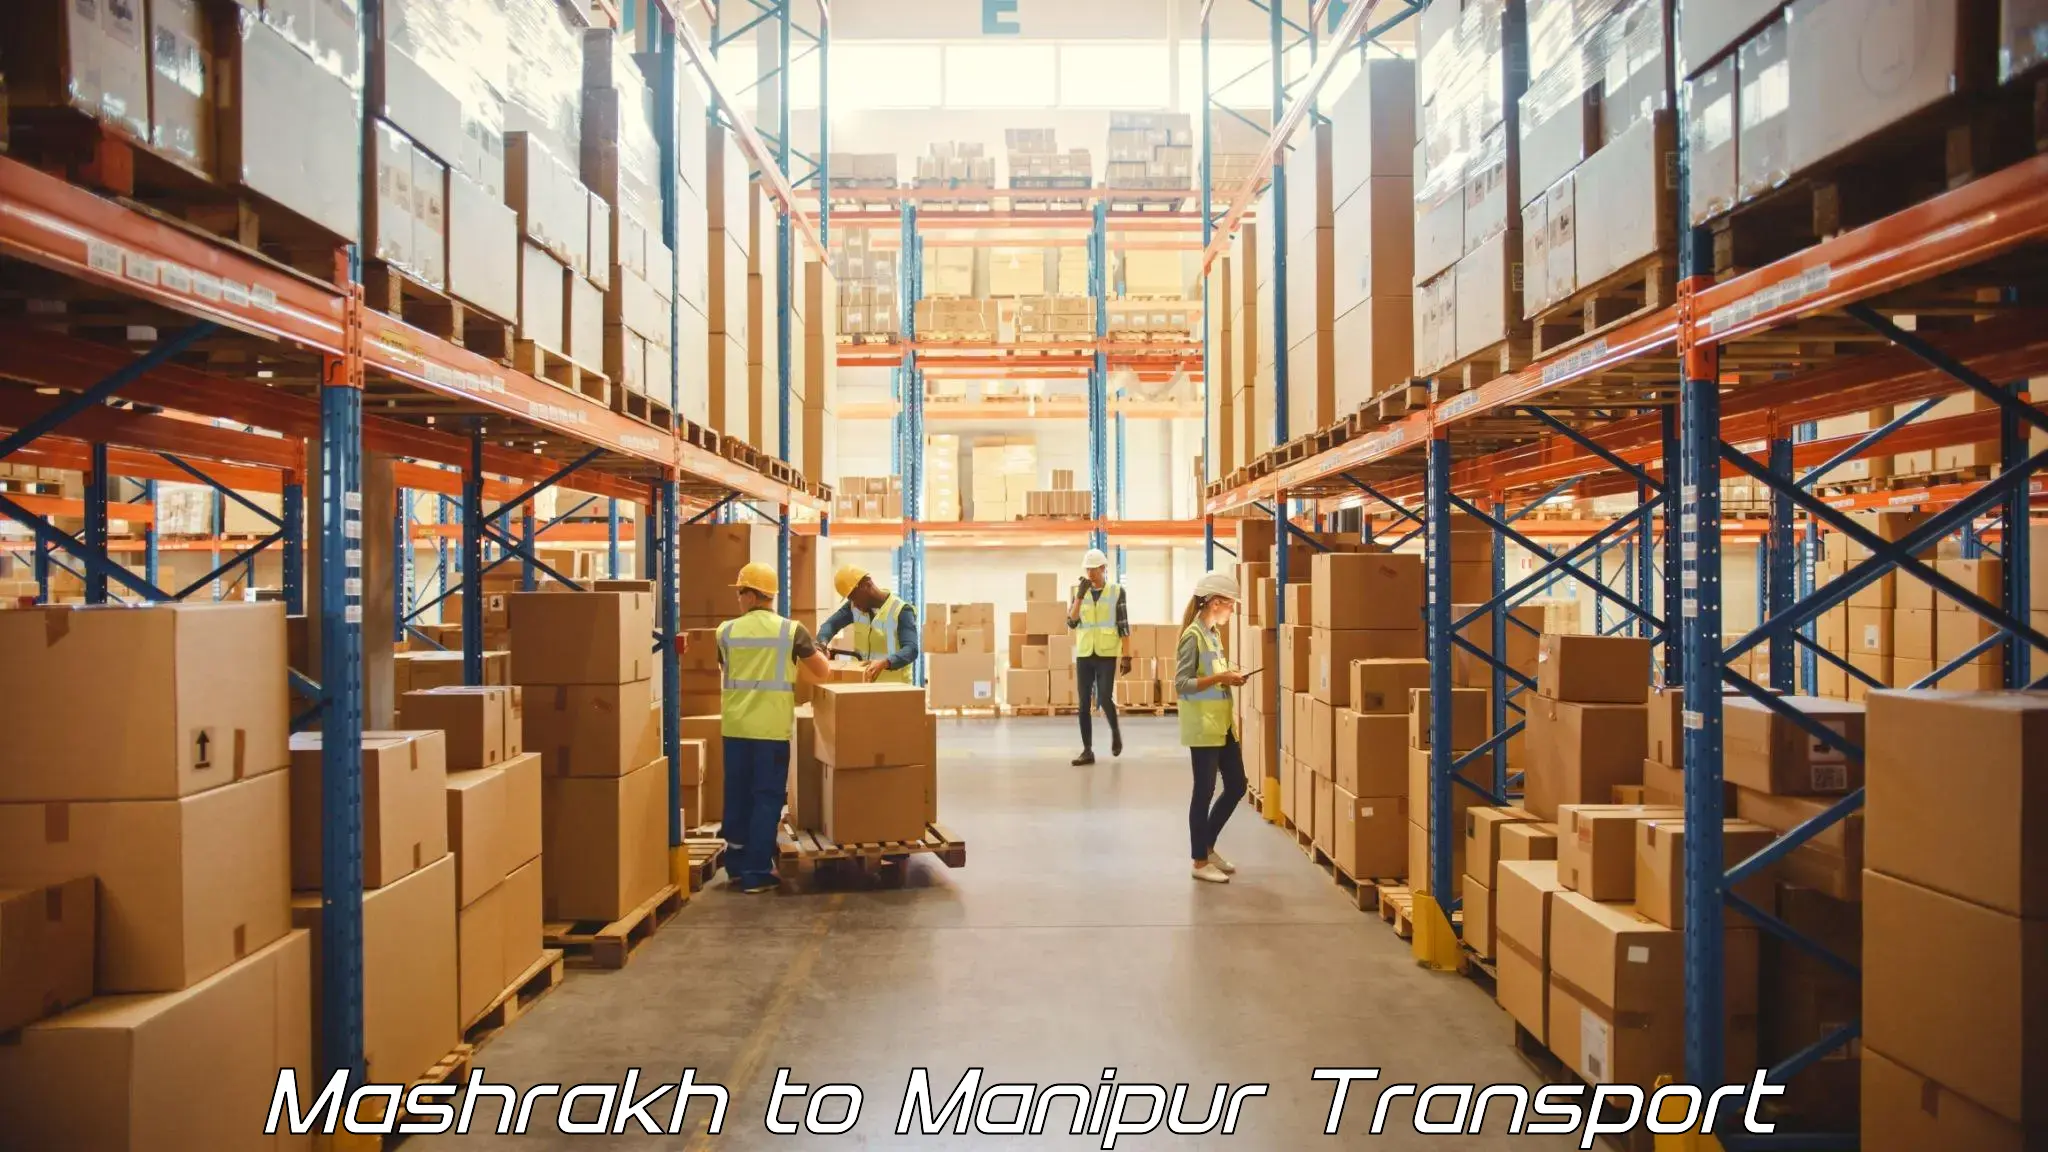 Commercial transport service Mashrakh to Ukhrul